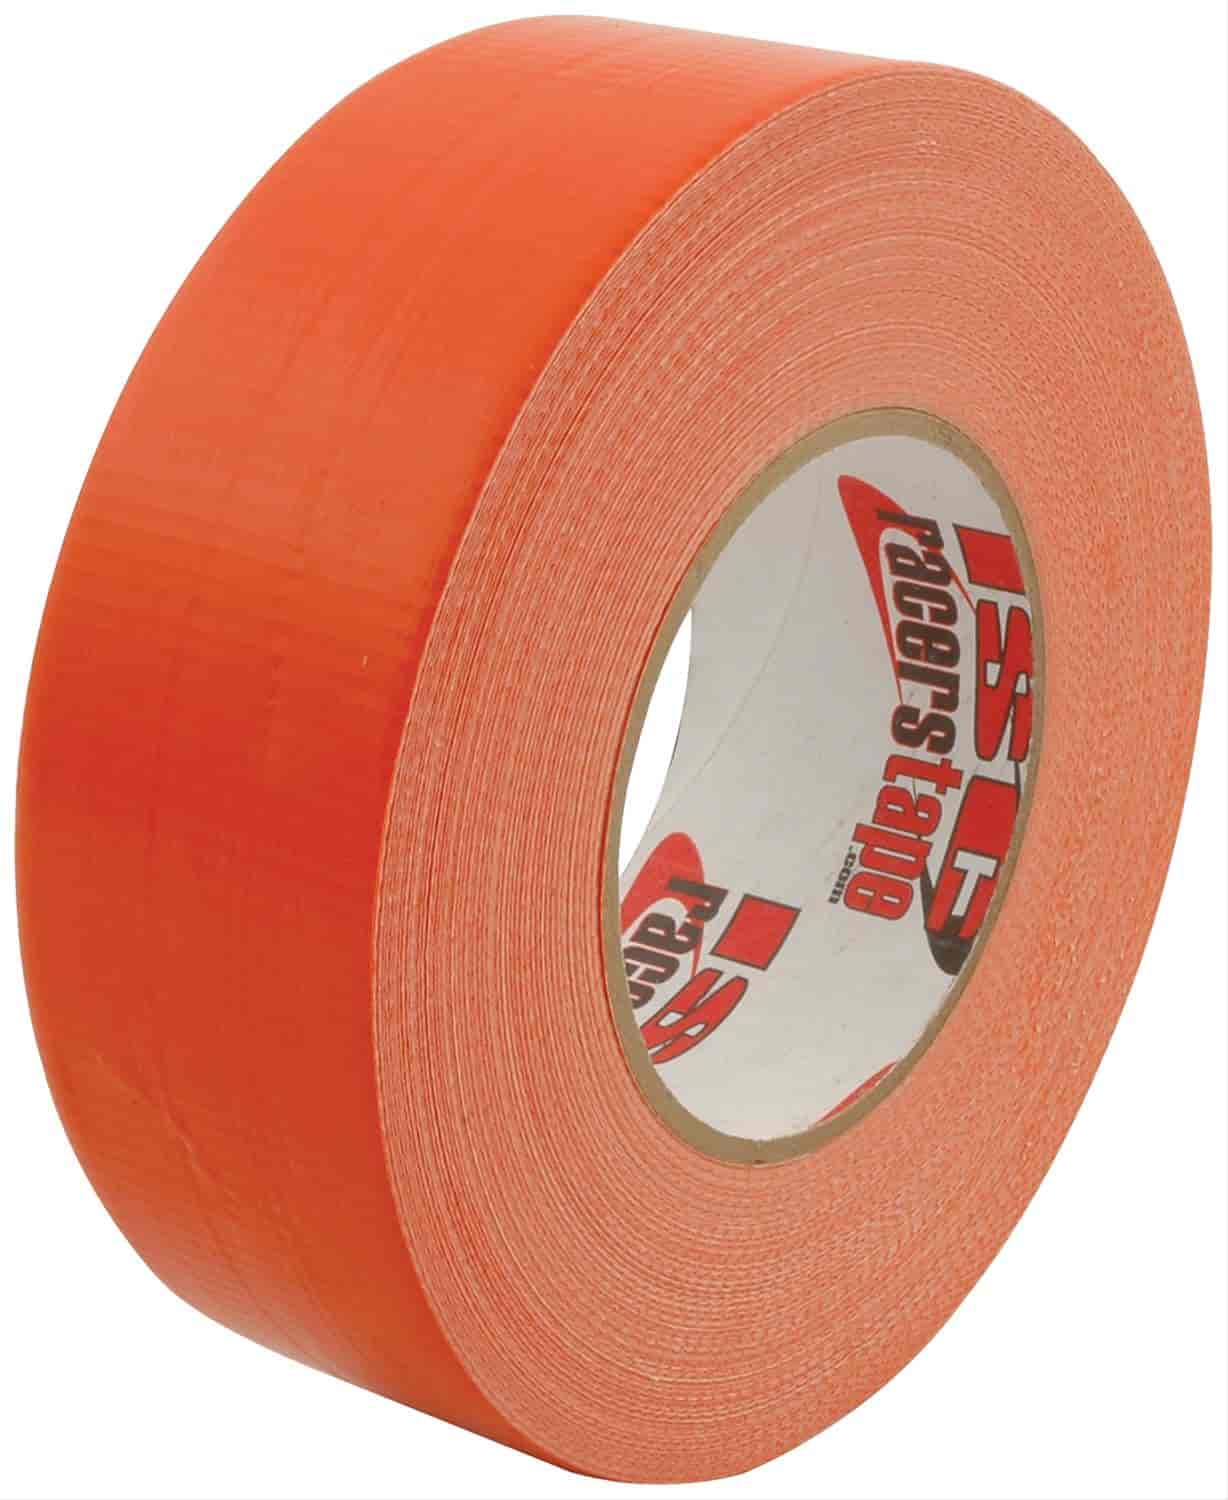 2" x 180" Racer"s Tape Orange